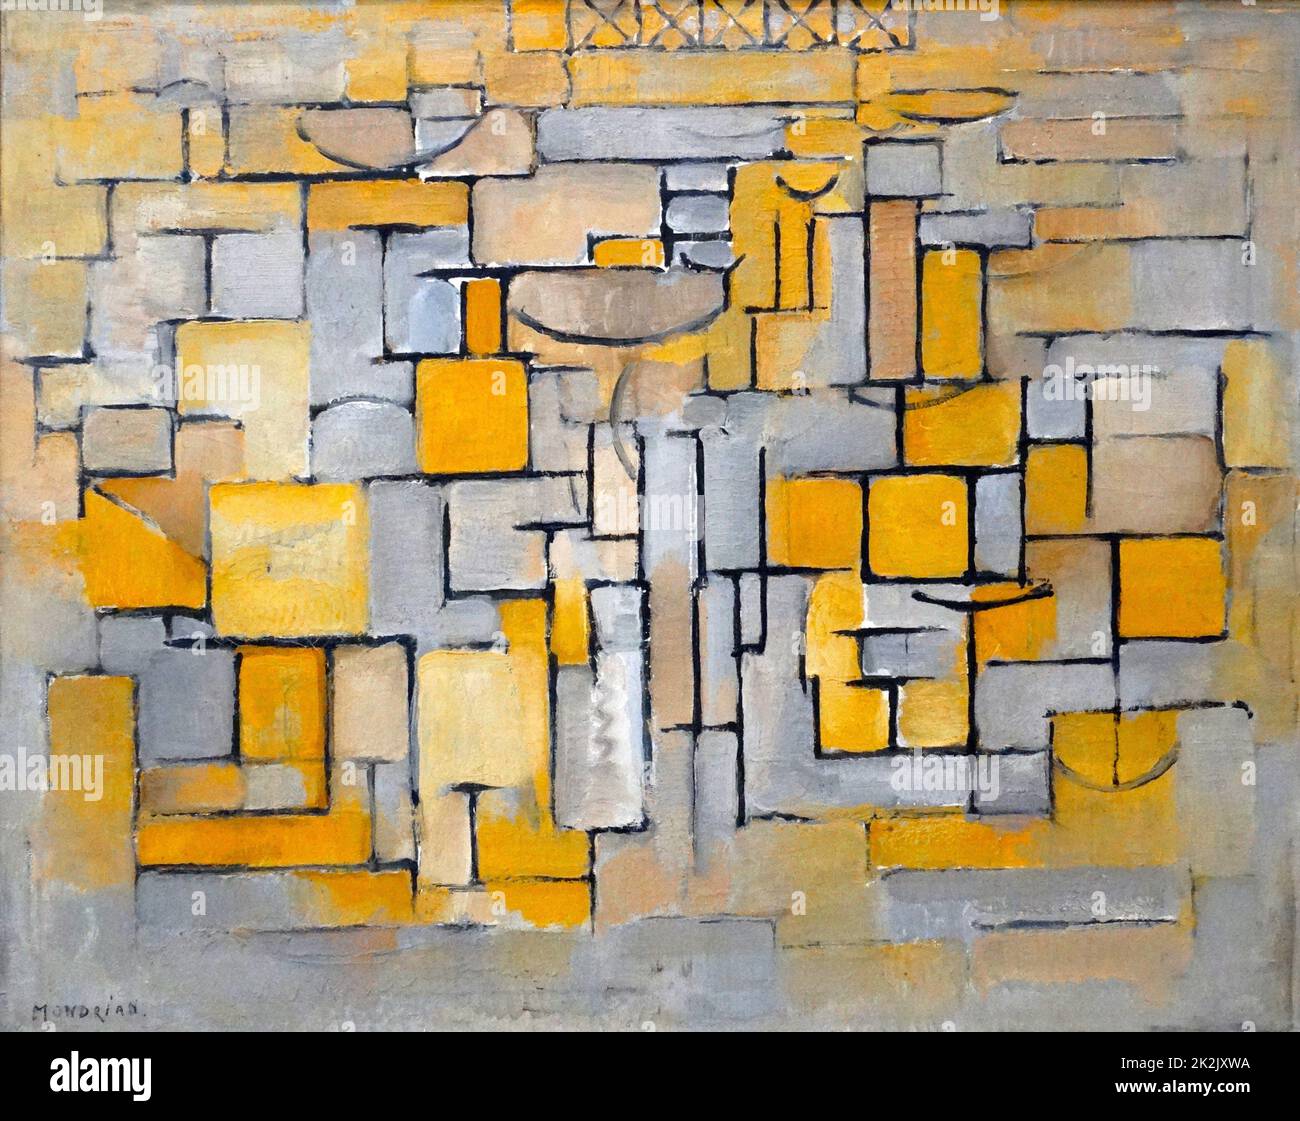 Pintura Nº 8 (óleo sobre lienzo) de Piet Mondrian (1872-1944) fue un pintor holandés. Fue un importante contribuyente al movimiento artístico y grupo De Stijl, que fue fundado por Theo van Doesburg. 1939 Foto de stock